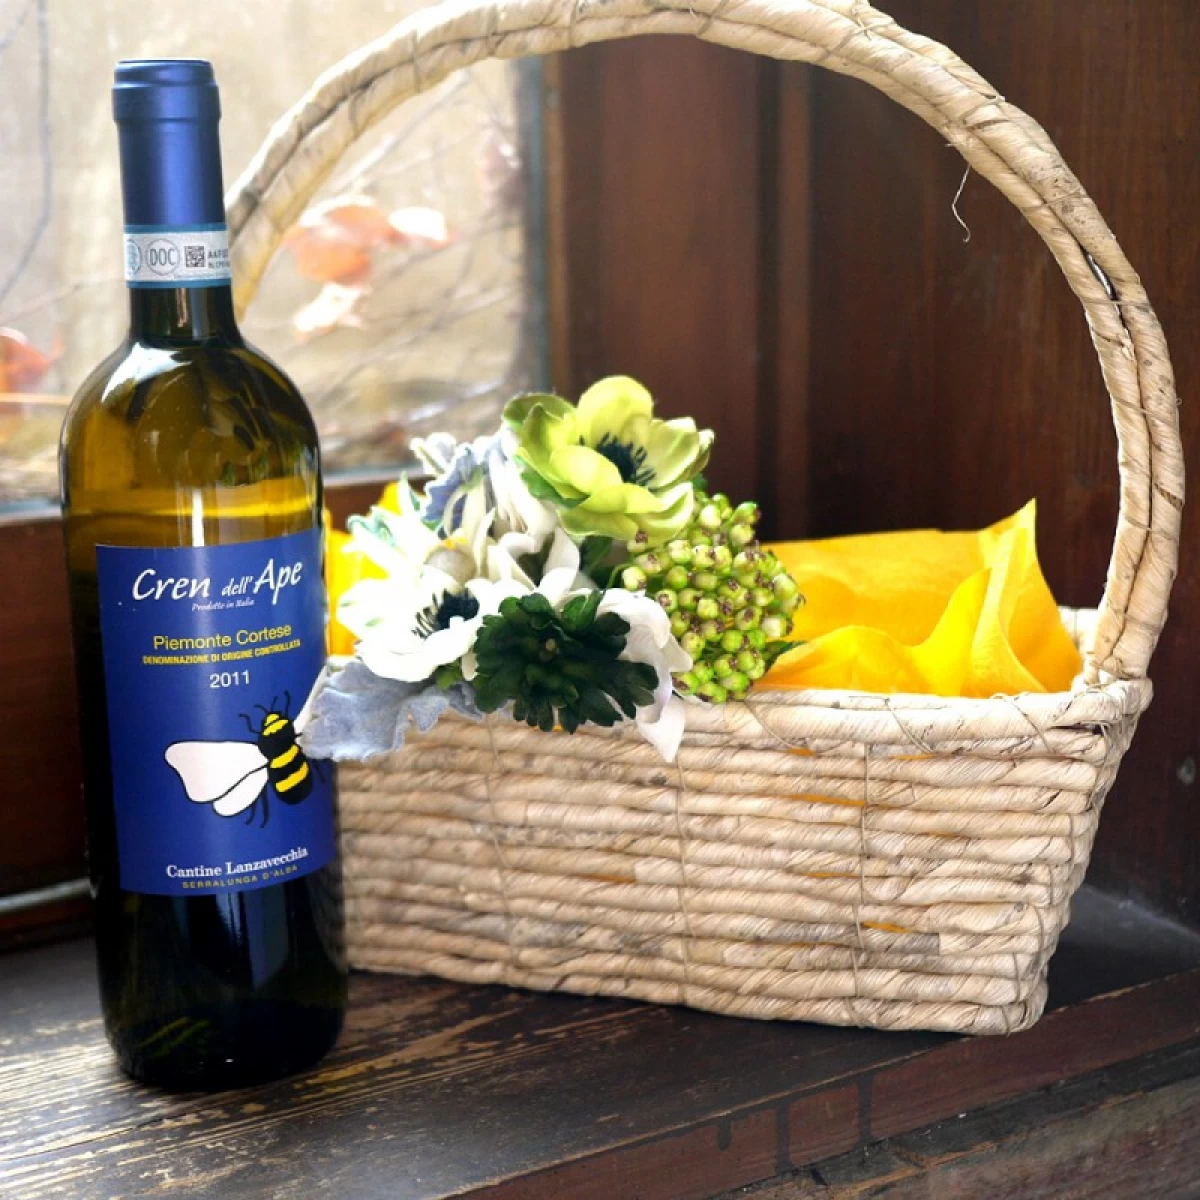 誕生日祝い 白ワイン [ワインギフト]イタリア産白ワインと造花のコサージュのギフトセット